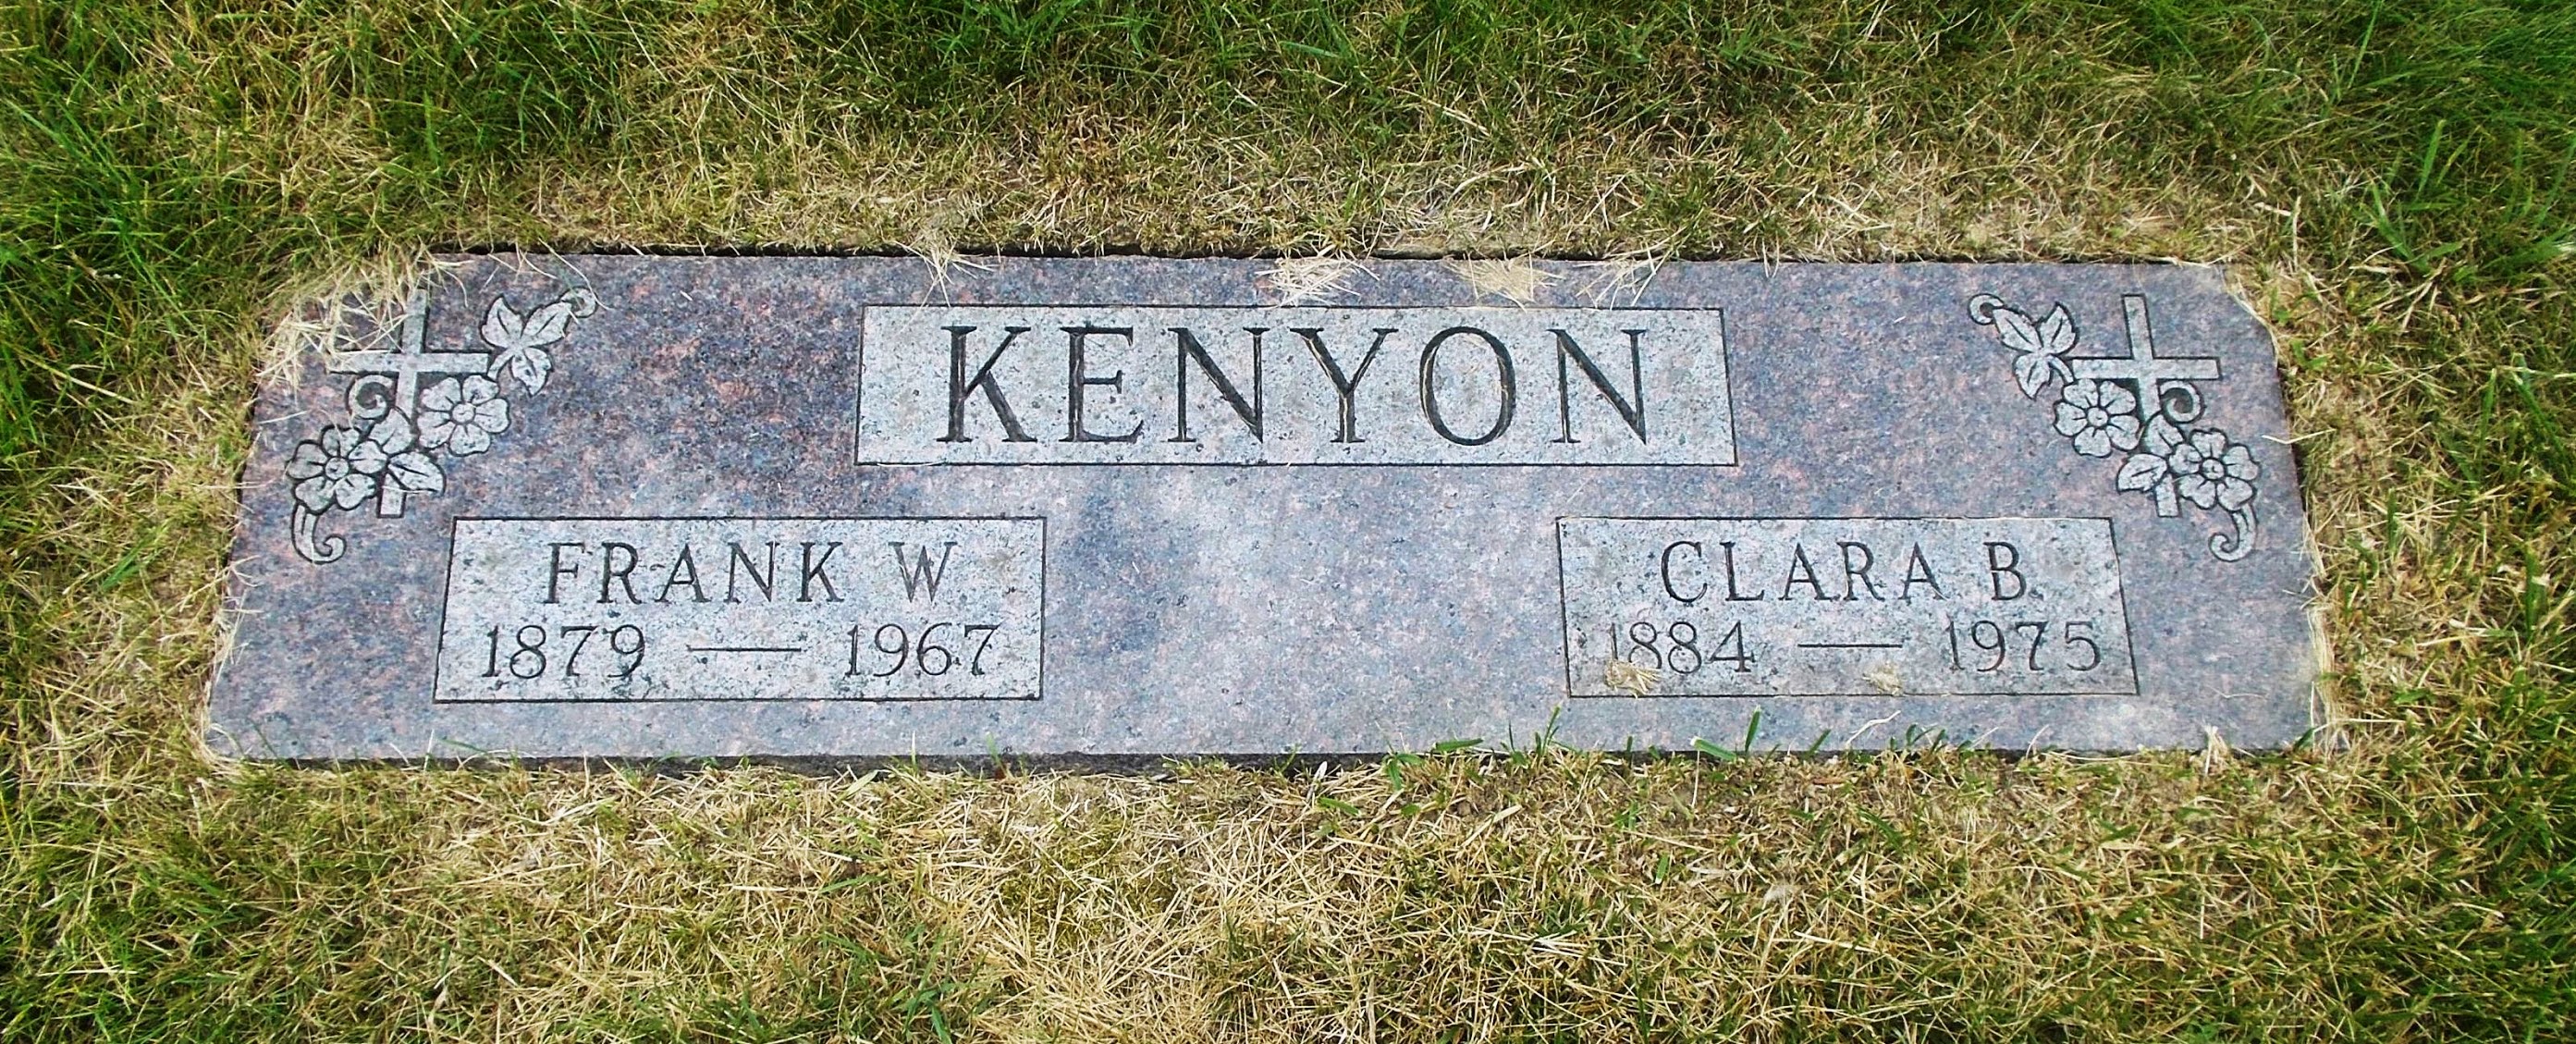 Frank W Kenyon